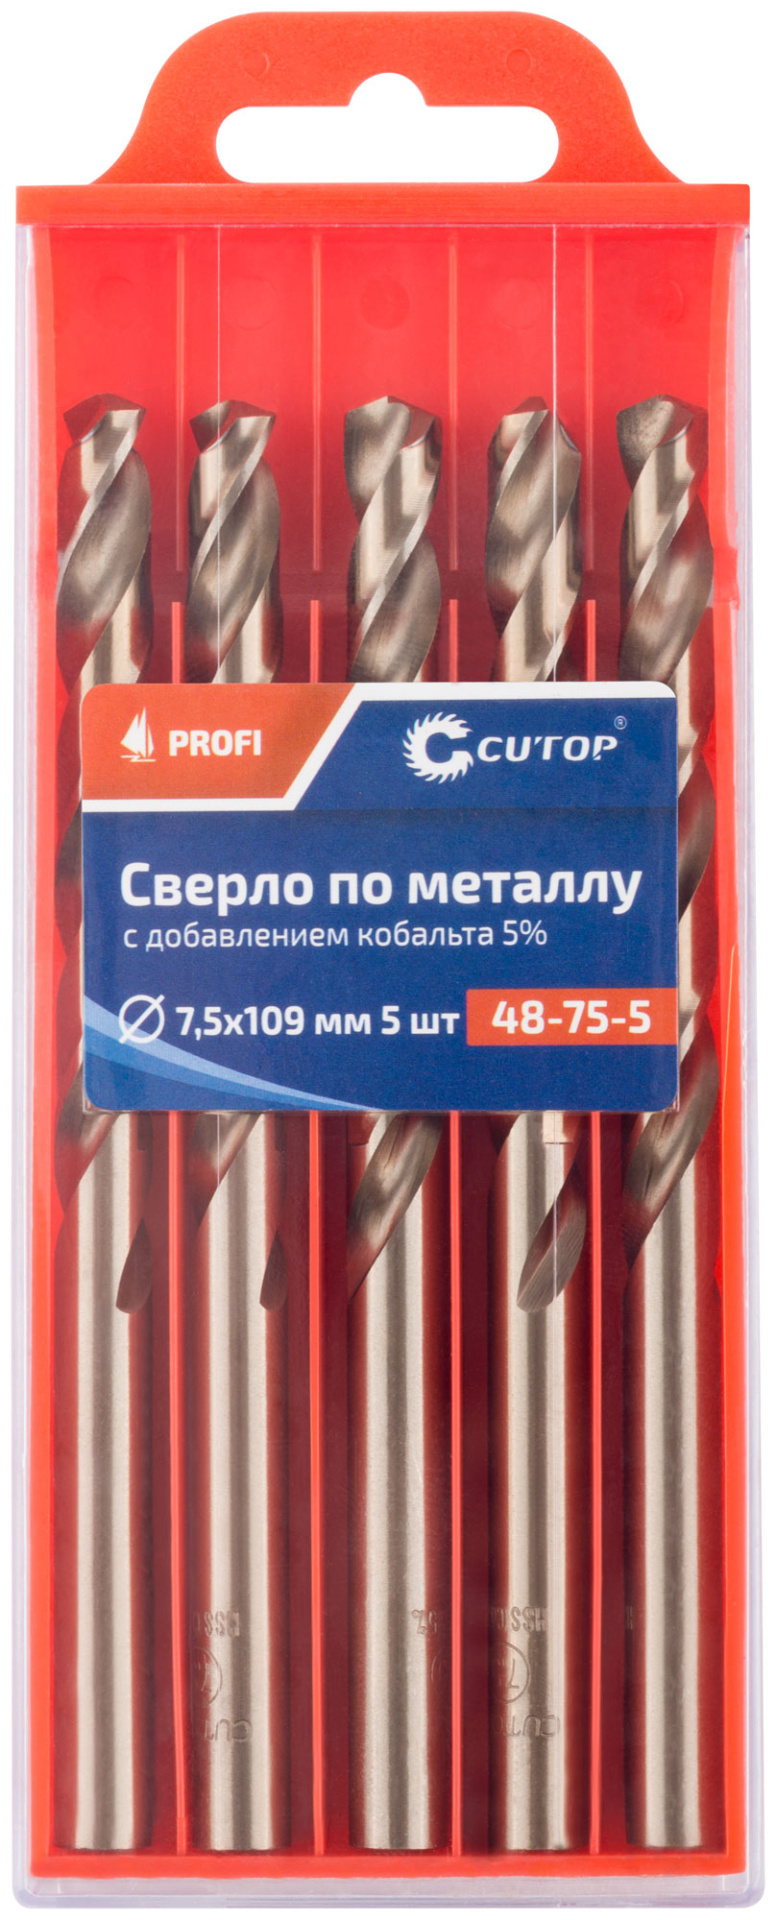 Сверло по металлу Profi с кобальтом 5%, 7,5 x 109 мм (5 шт) Cutop